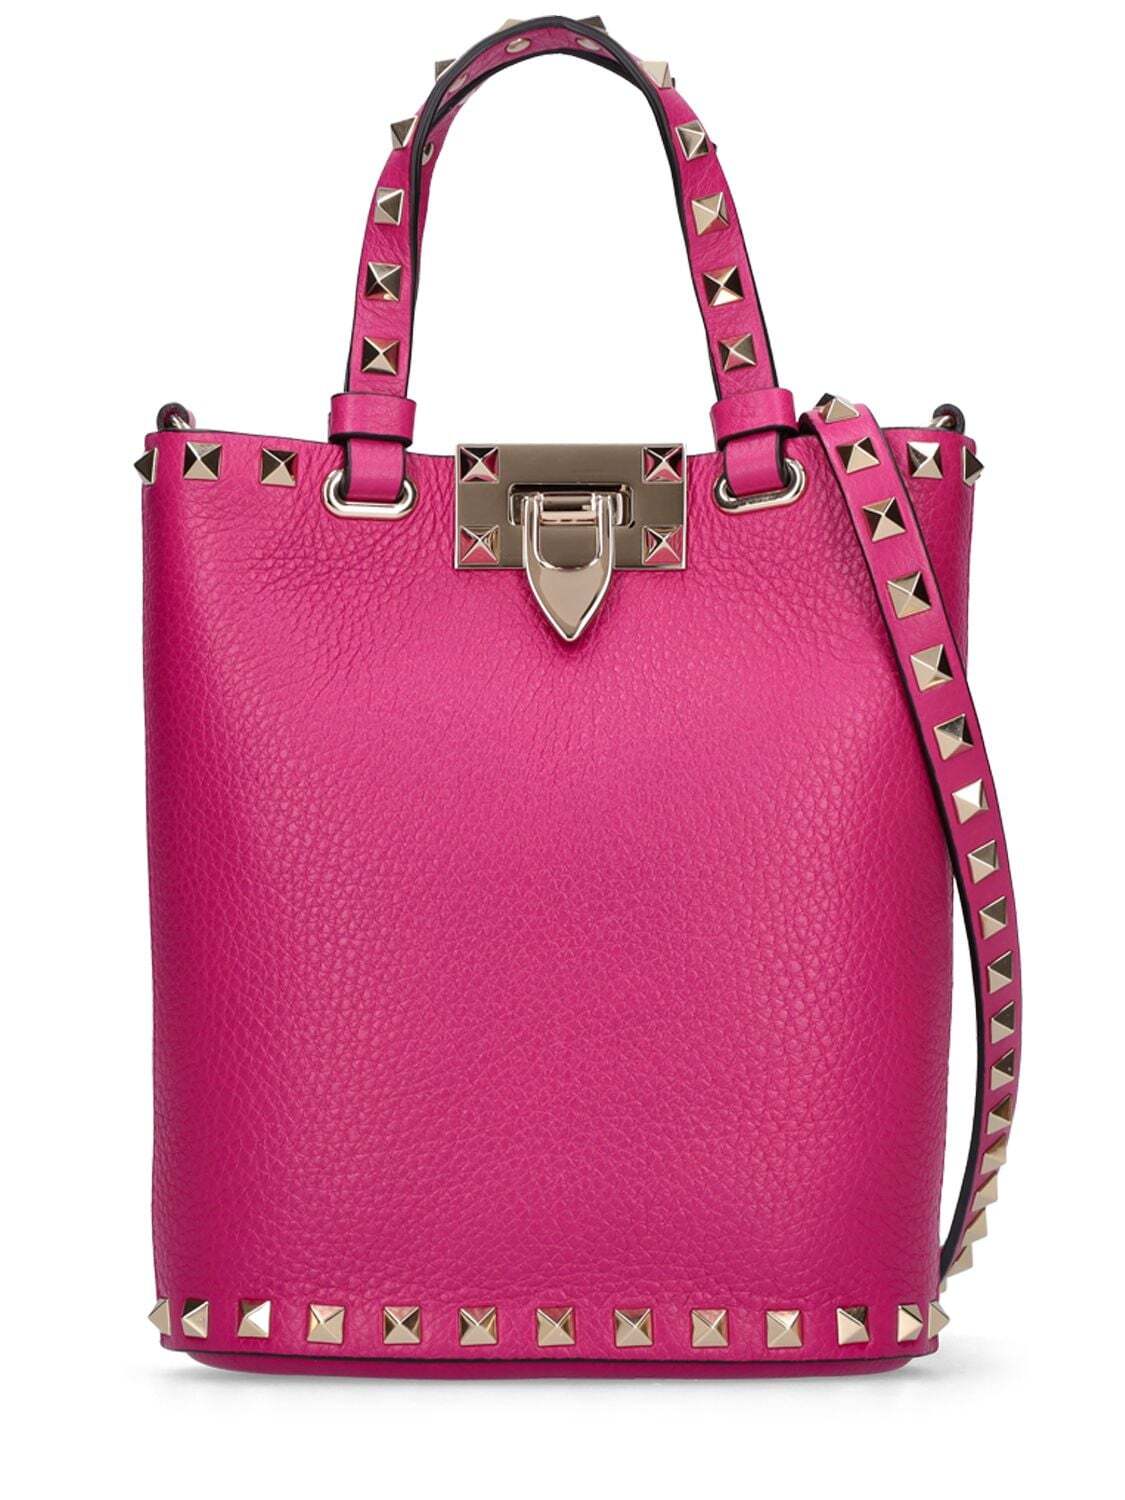 VALENTINO GARAVANI Small Rockstud Leather Shoulder Bag in rose / violet